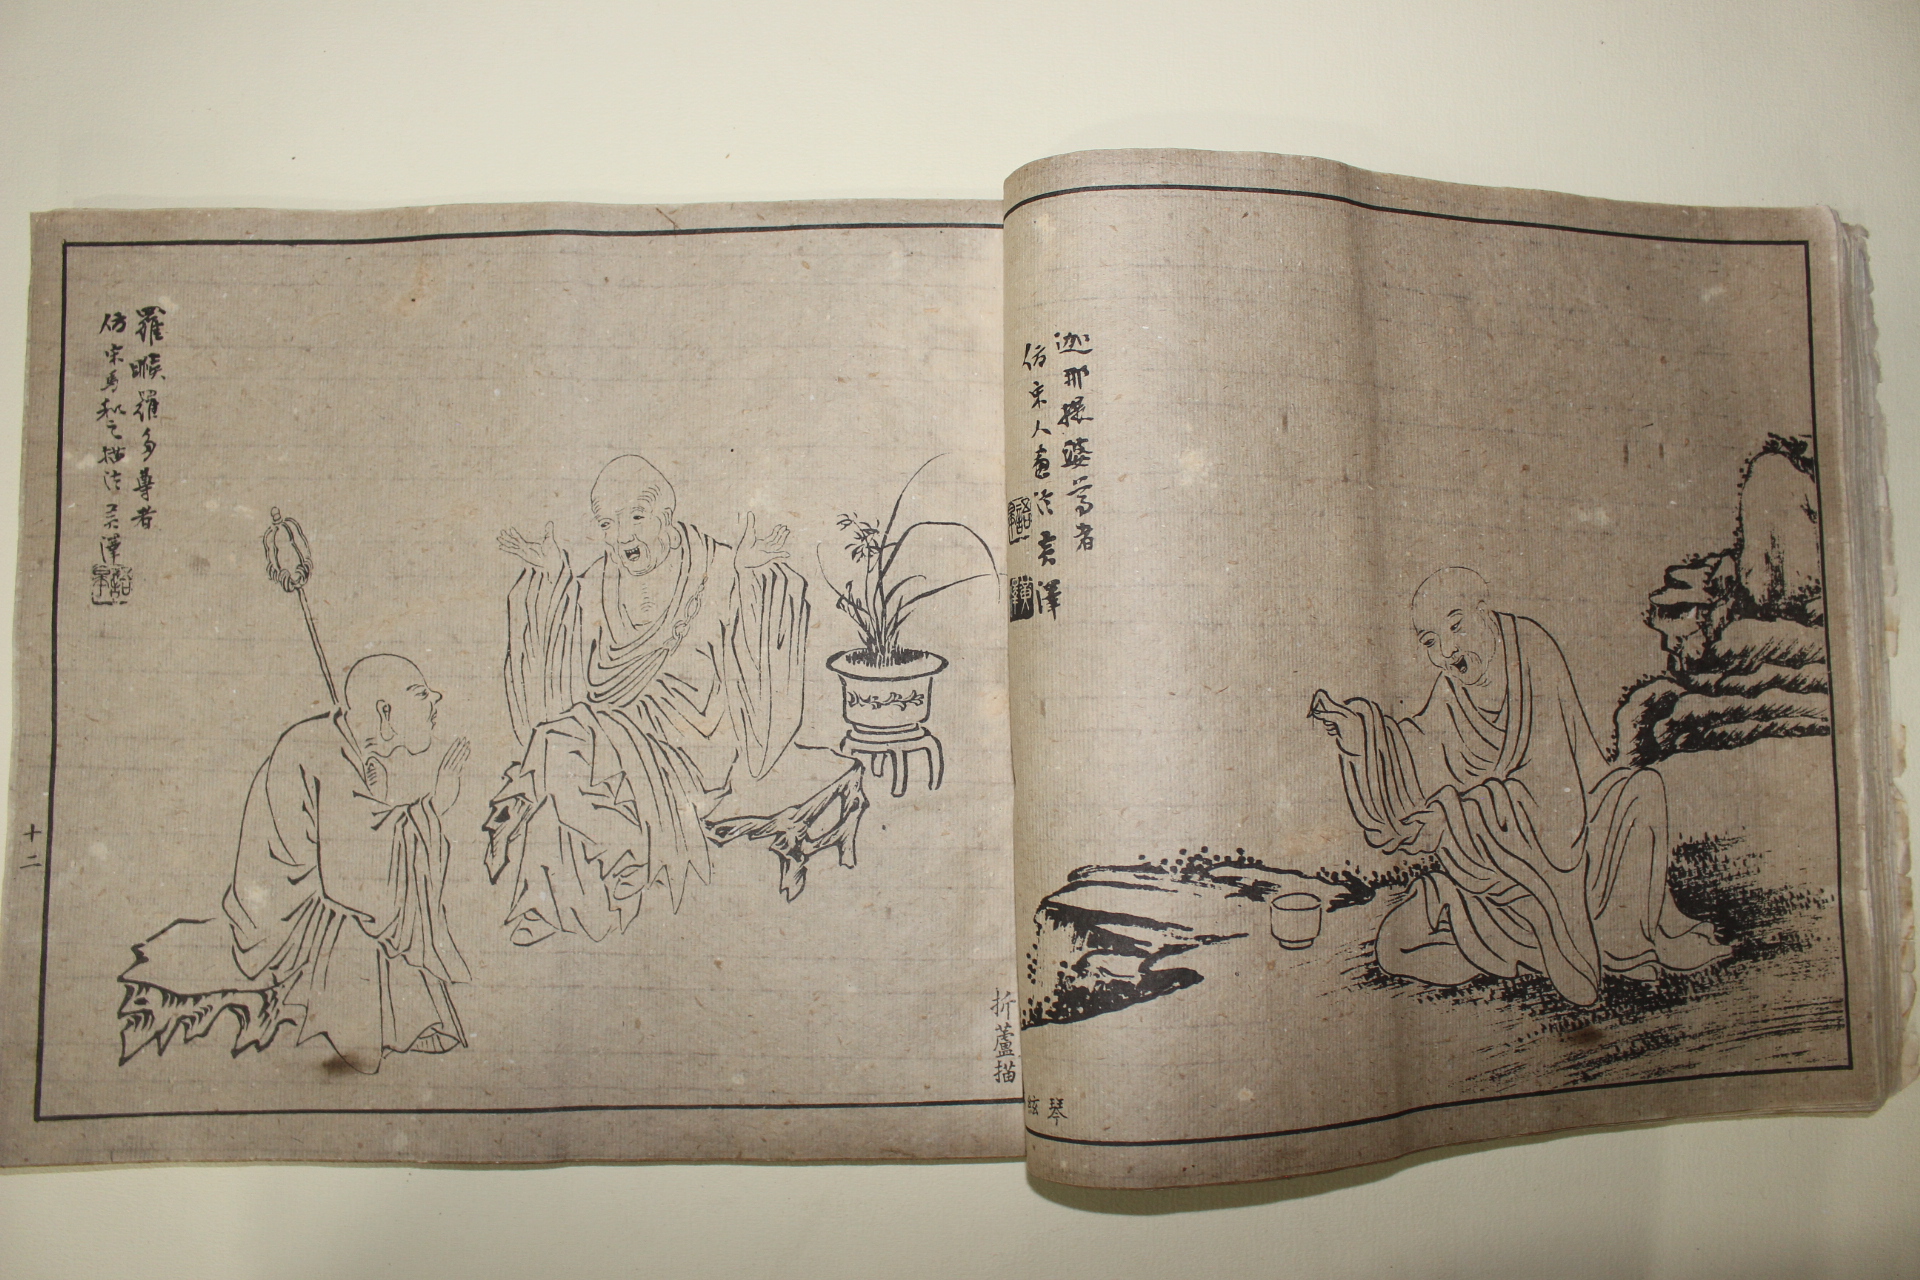 1924년(中元甲子) 중국석판본 불조도영(佛祖道影)